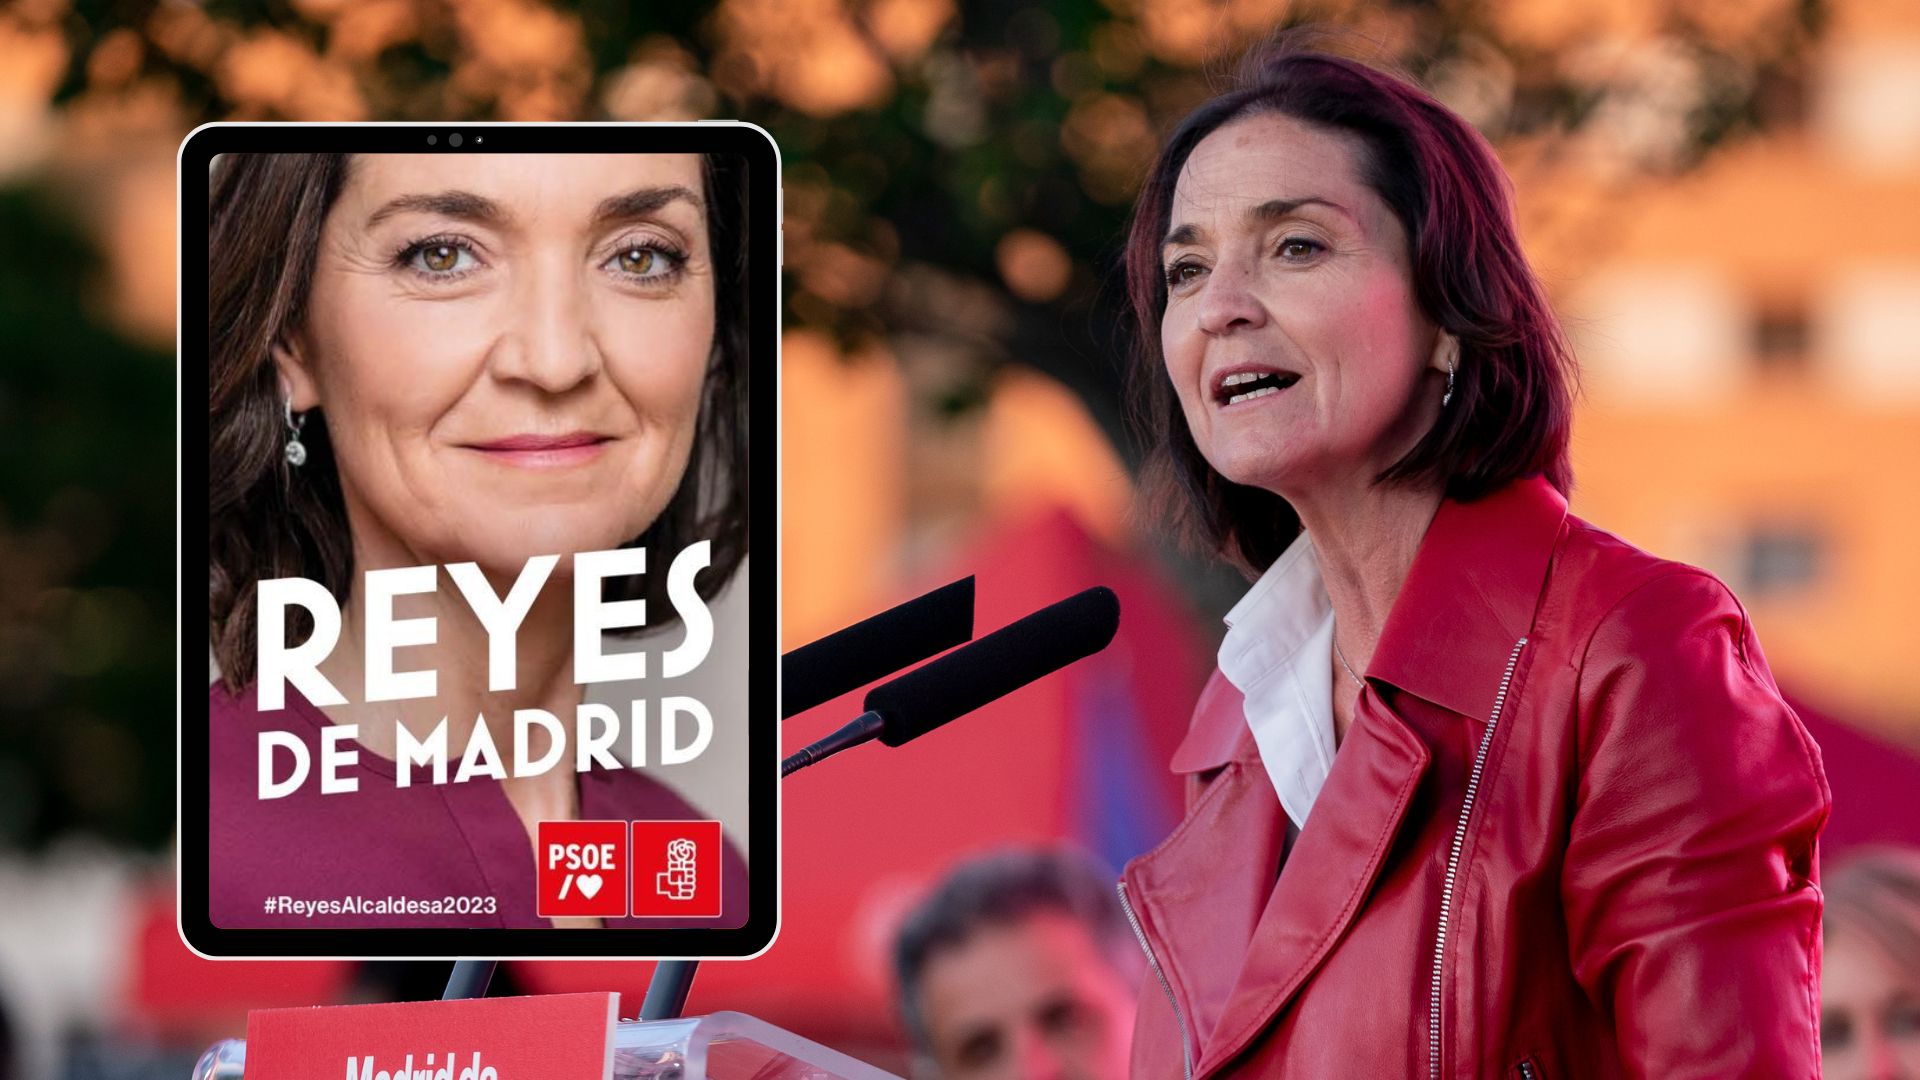 Programa electoral del PSOE a Madrid 2023: Què proposa Reyes Maroto?